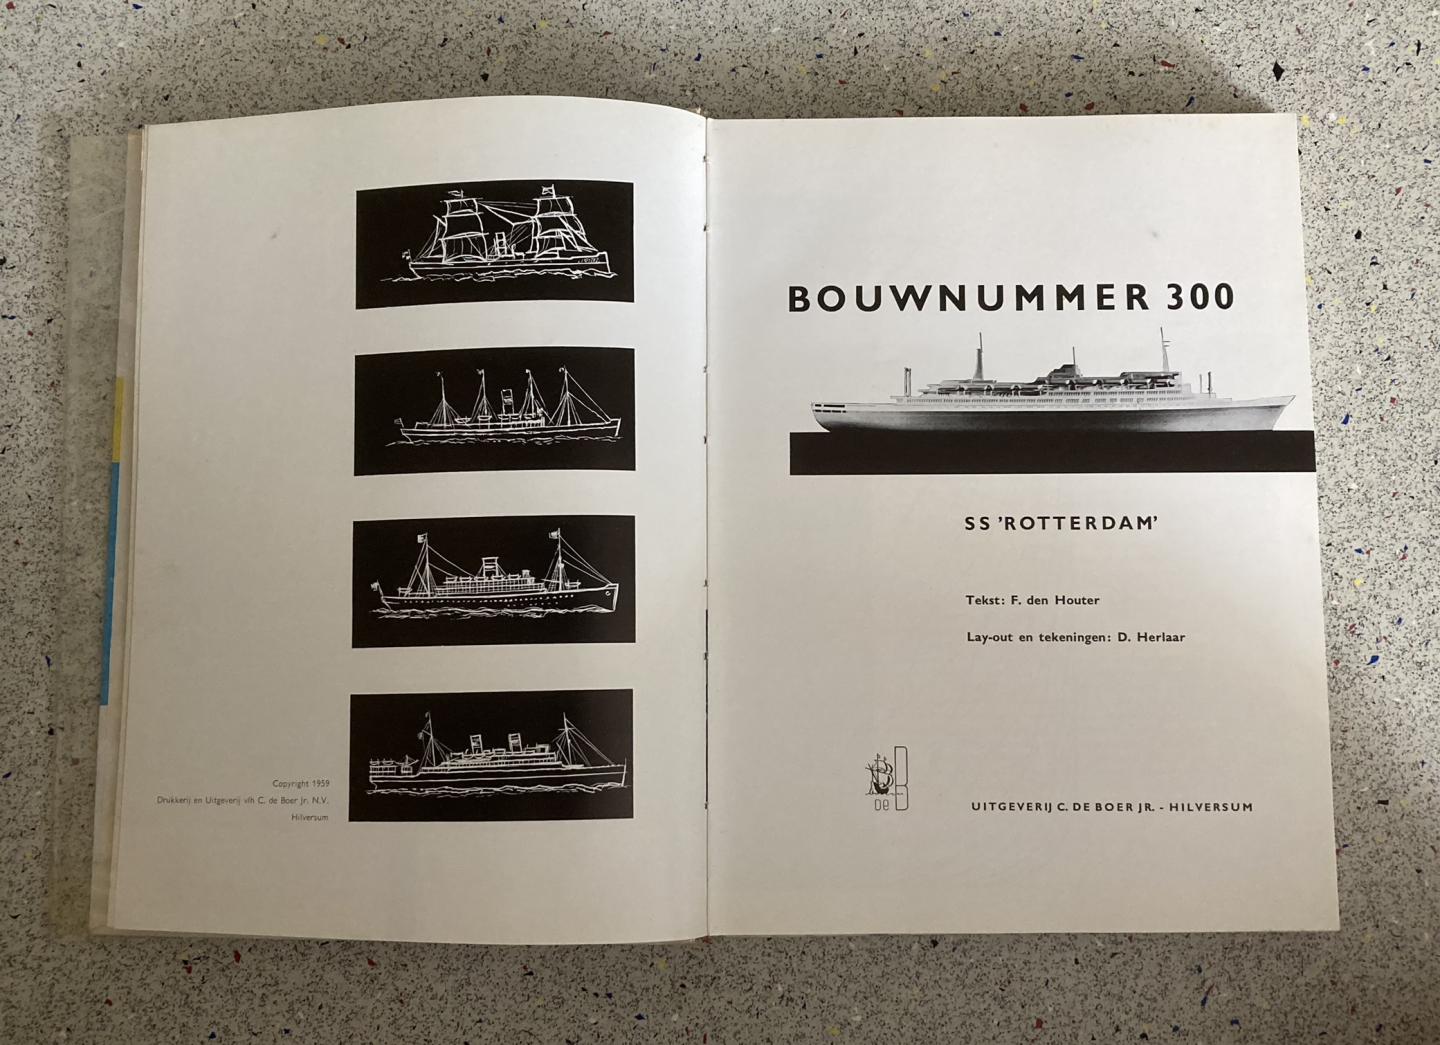 Houter, F. den - Bouwnummer 300. SS "Rotterdam" Holland Amerika Lijn.